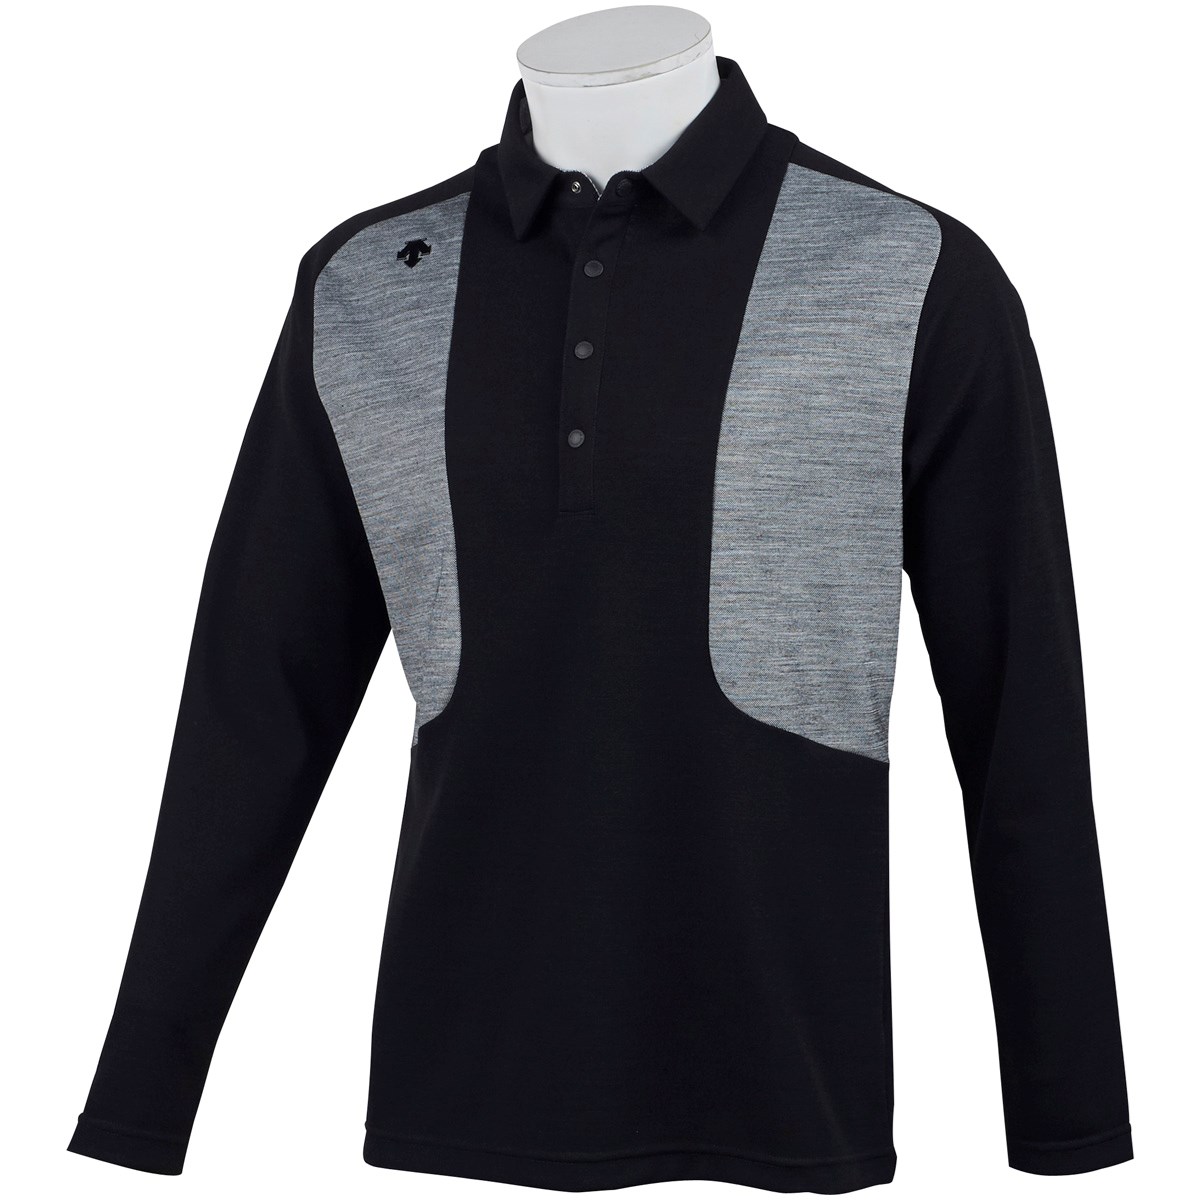 「デサントゴルフ(DESCENTE GOLF) 長袖ポロシャツ 」（ポロシャツ・シャツ）- ゴルフ(GOLF)用品のネット通販